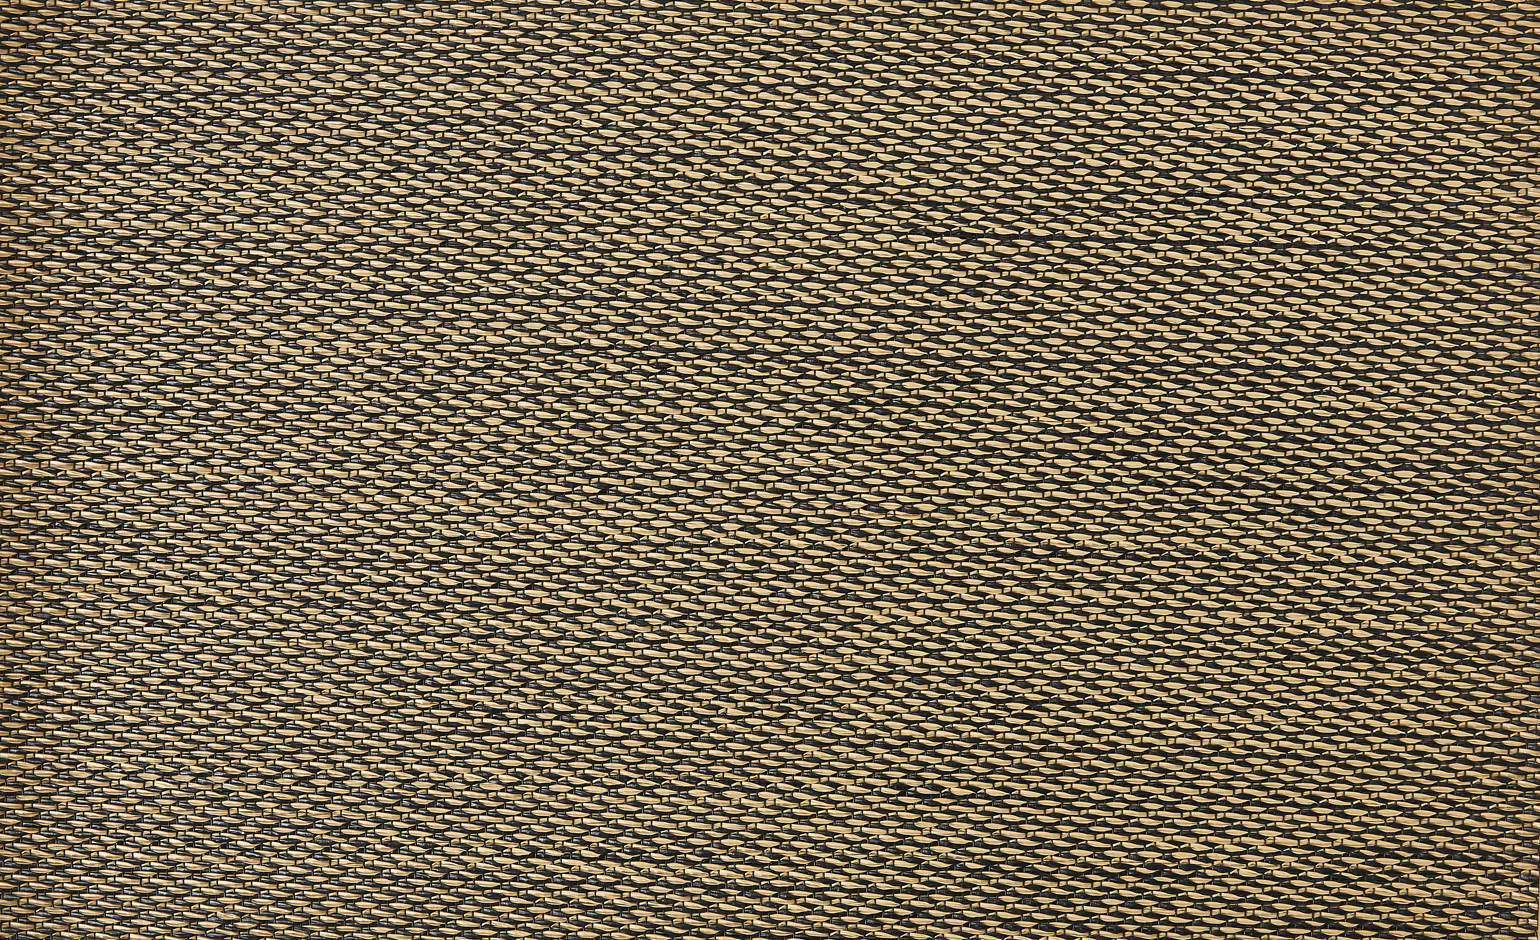 Sol vinyle rouleau NATURELOOK CHOCOLAT, Textile fibre tissée, chocolat, rouleau 2.00 m